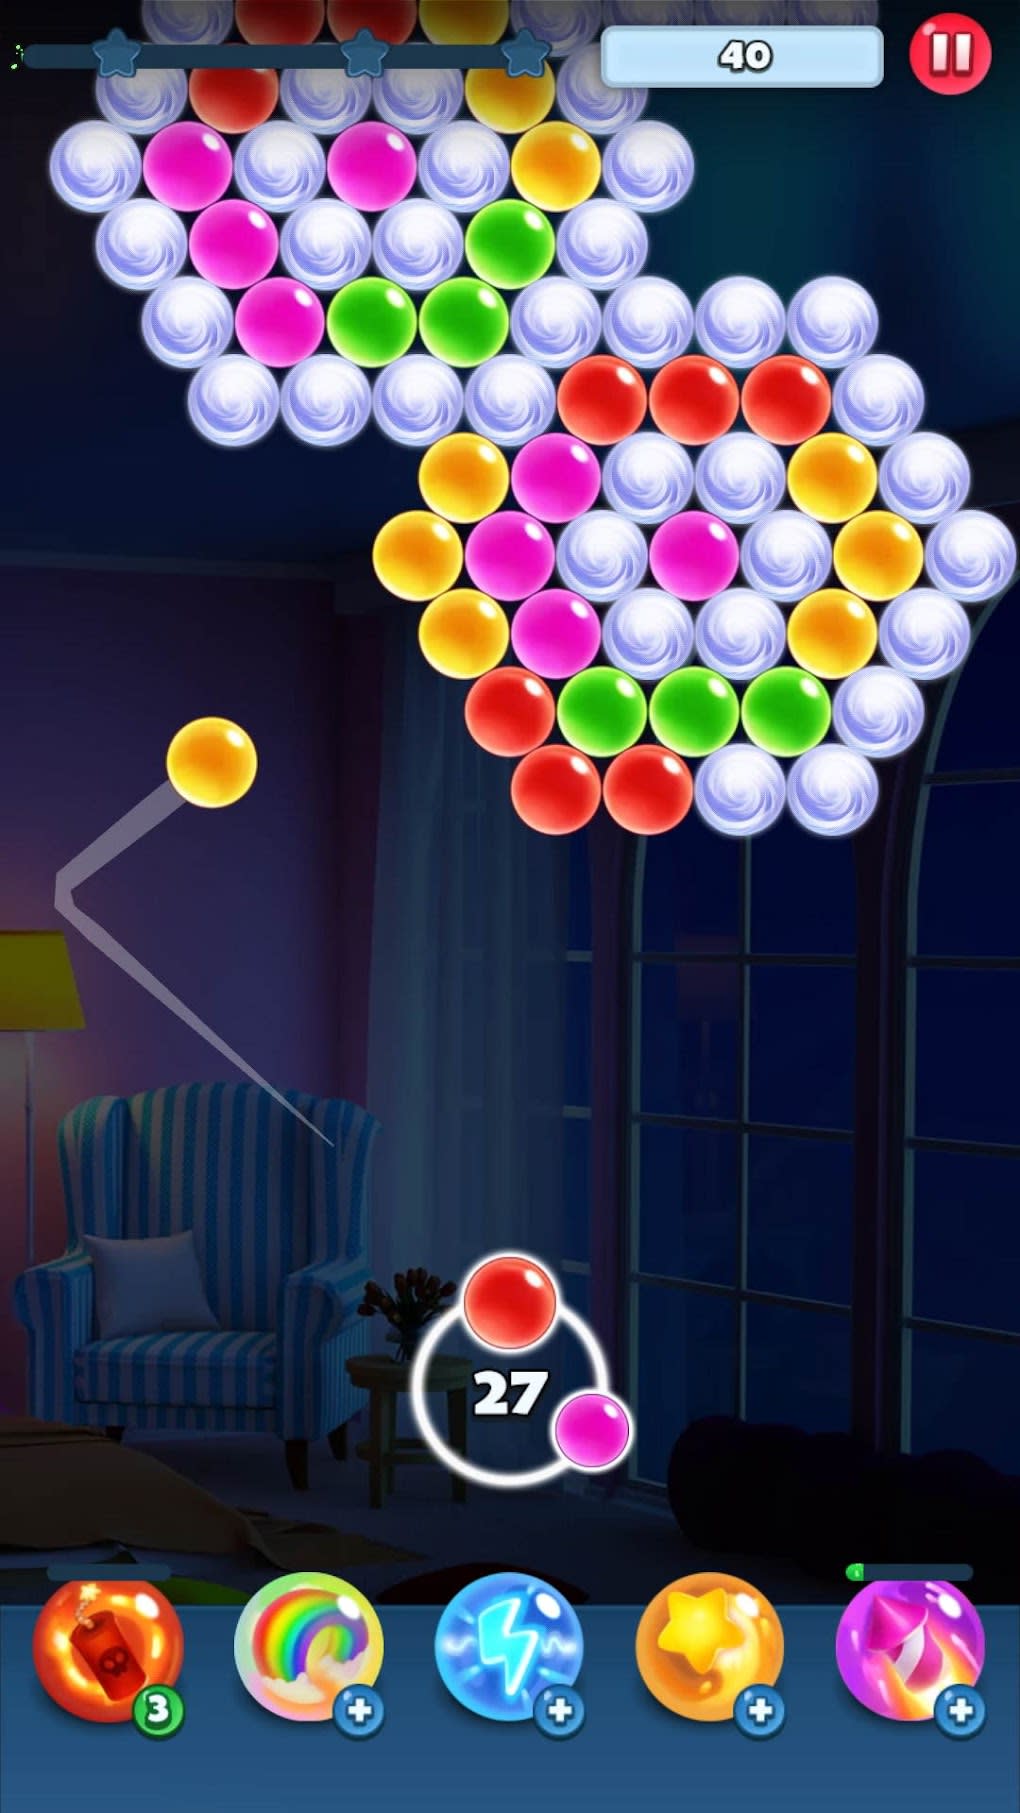 Bubble Shooter Nível infinito versão móvel andróide iOS apk baixar